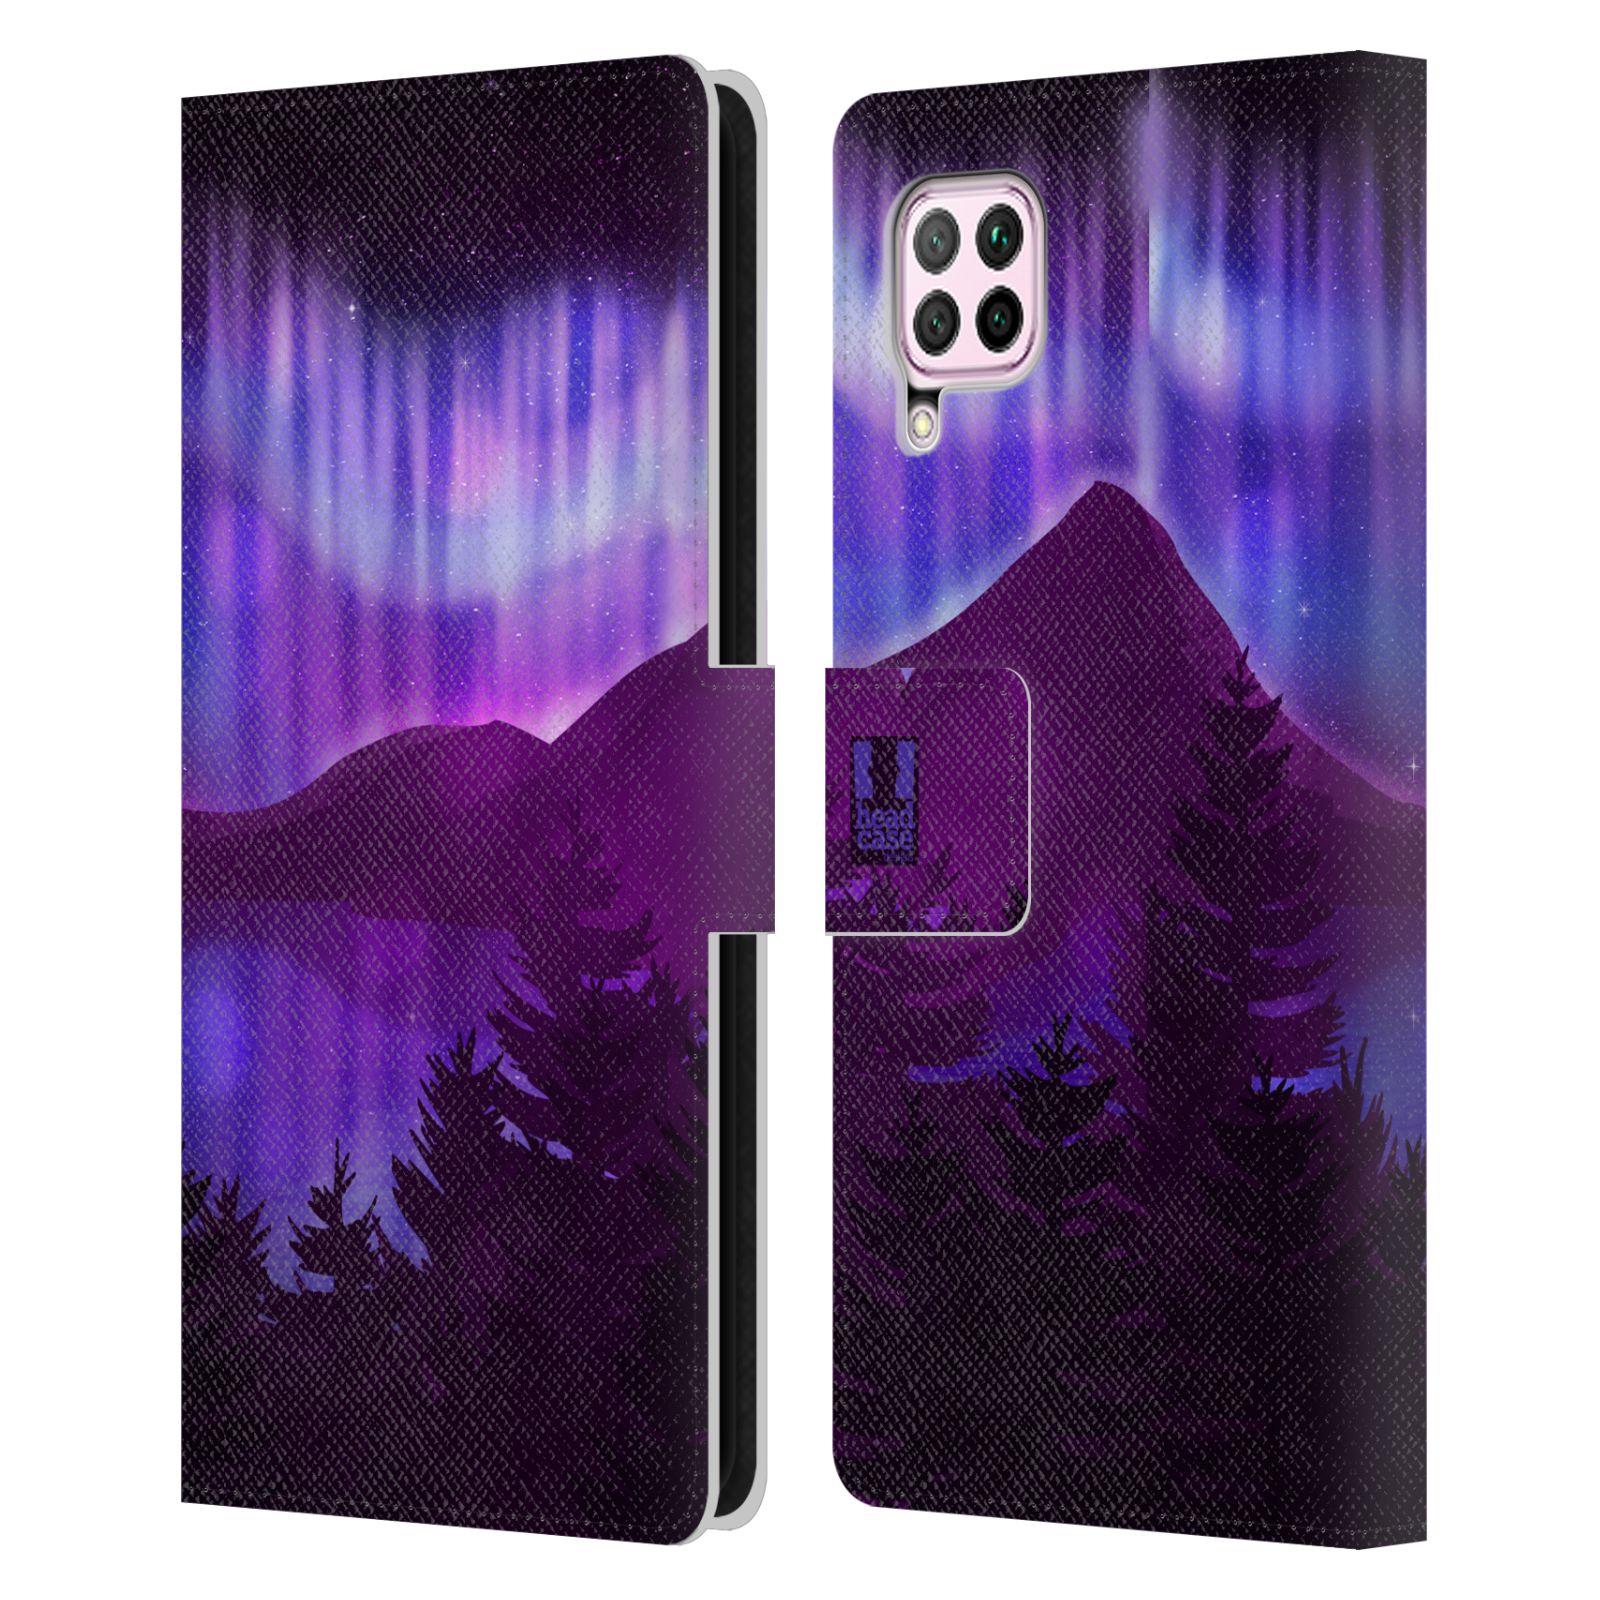 Pouzdro na mobil Huawei P40 LITE - HEAD CASE - Hory a lesy fialový odstín